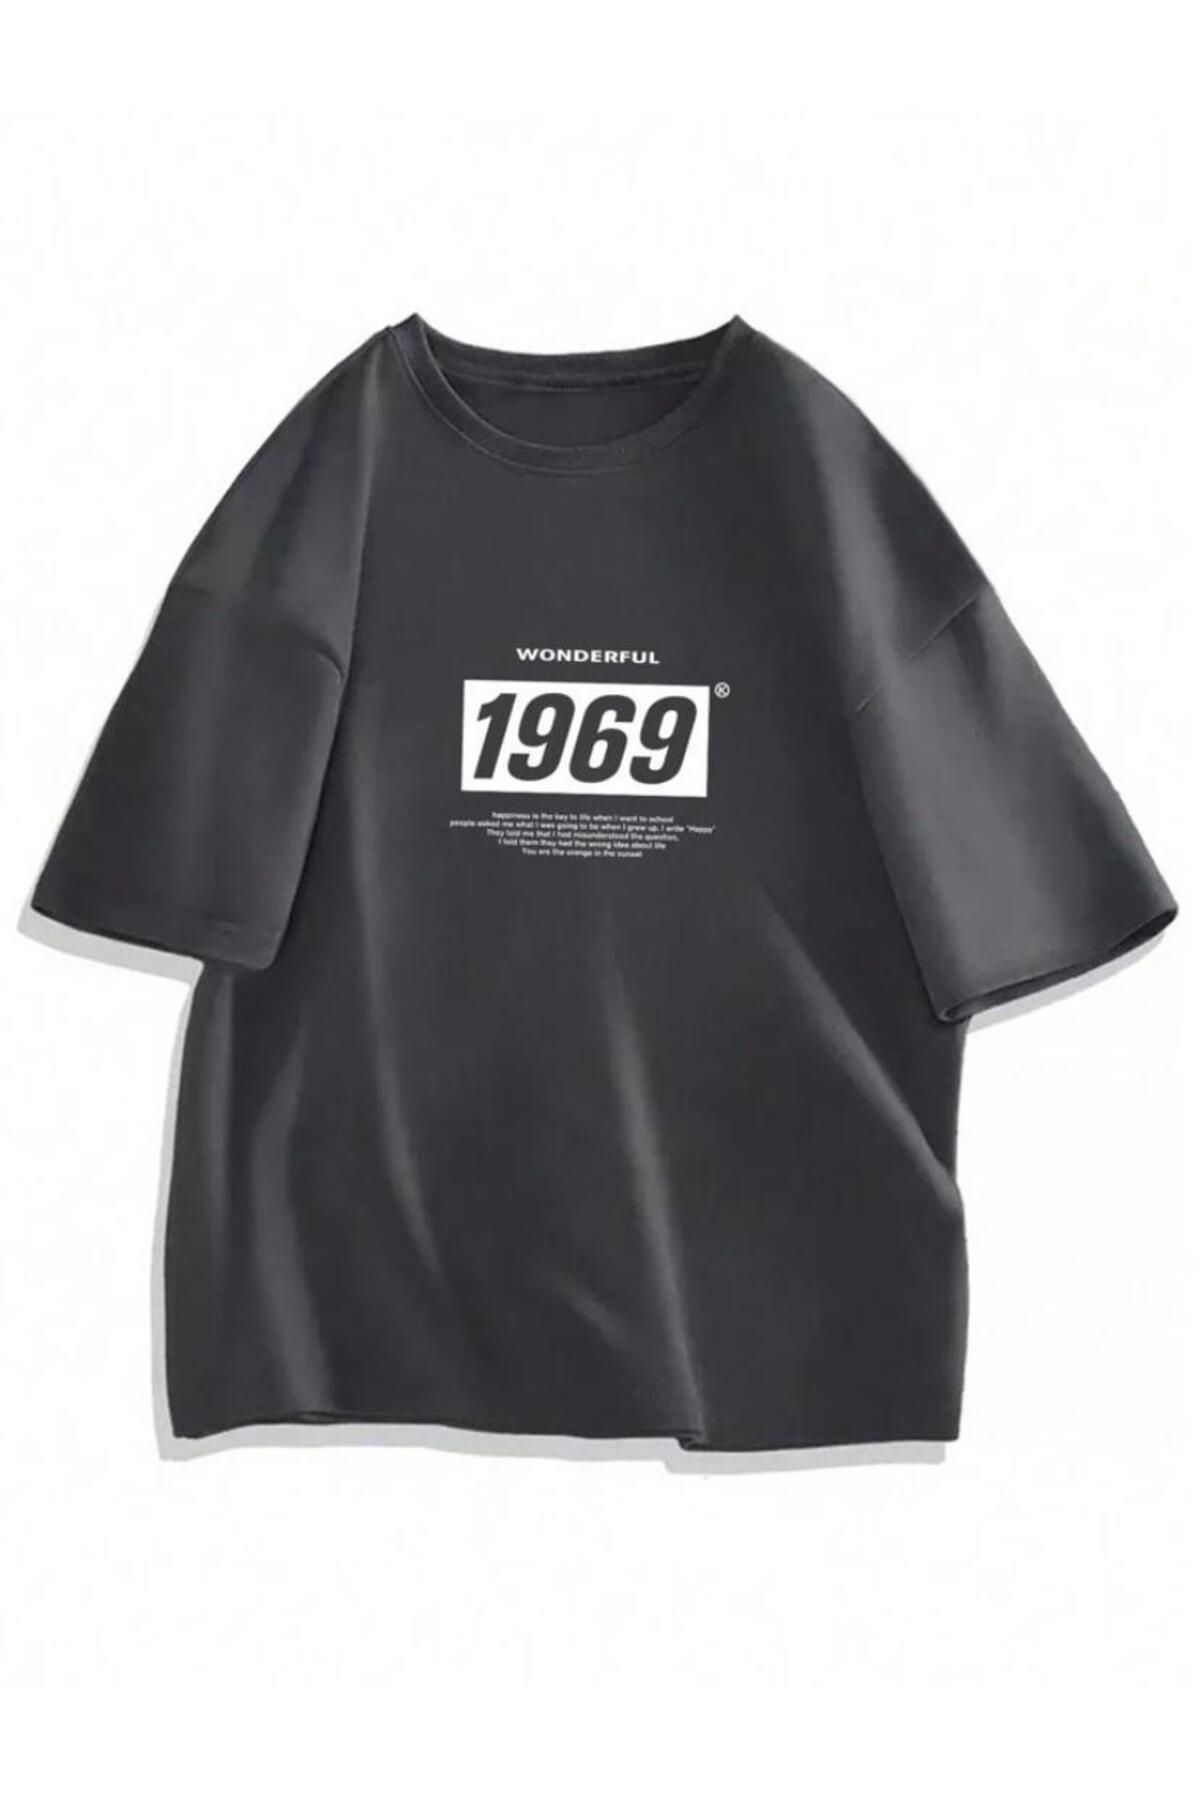 AFROGİYİM Unisex 1969 Wonderful Baskılı Oversize T-shirt